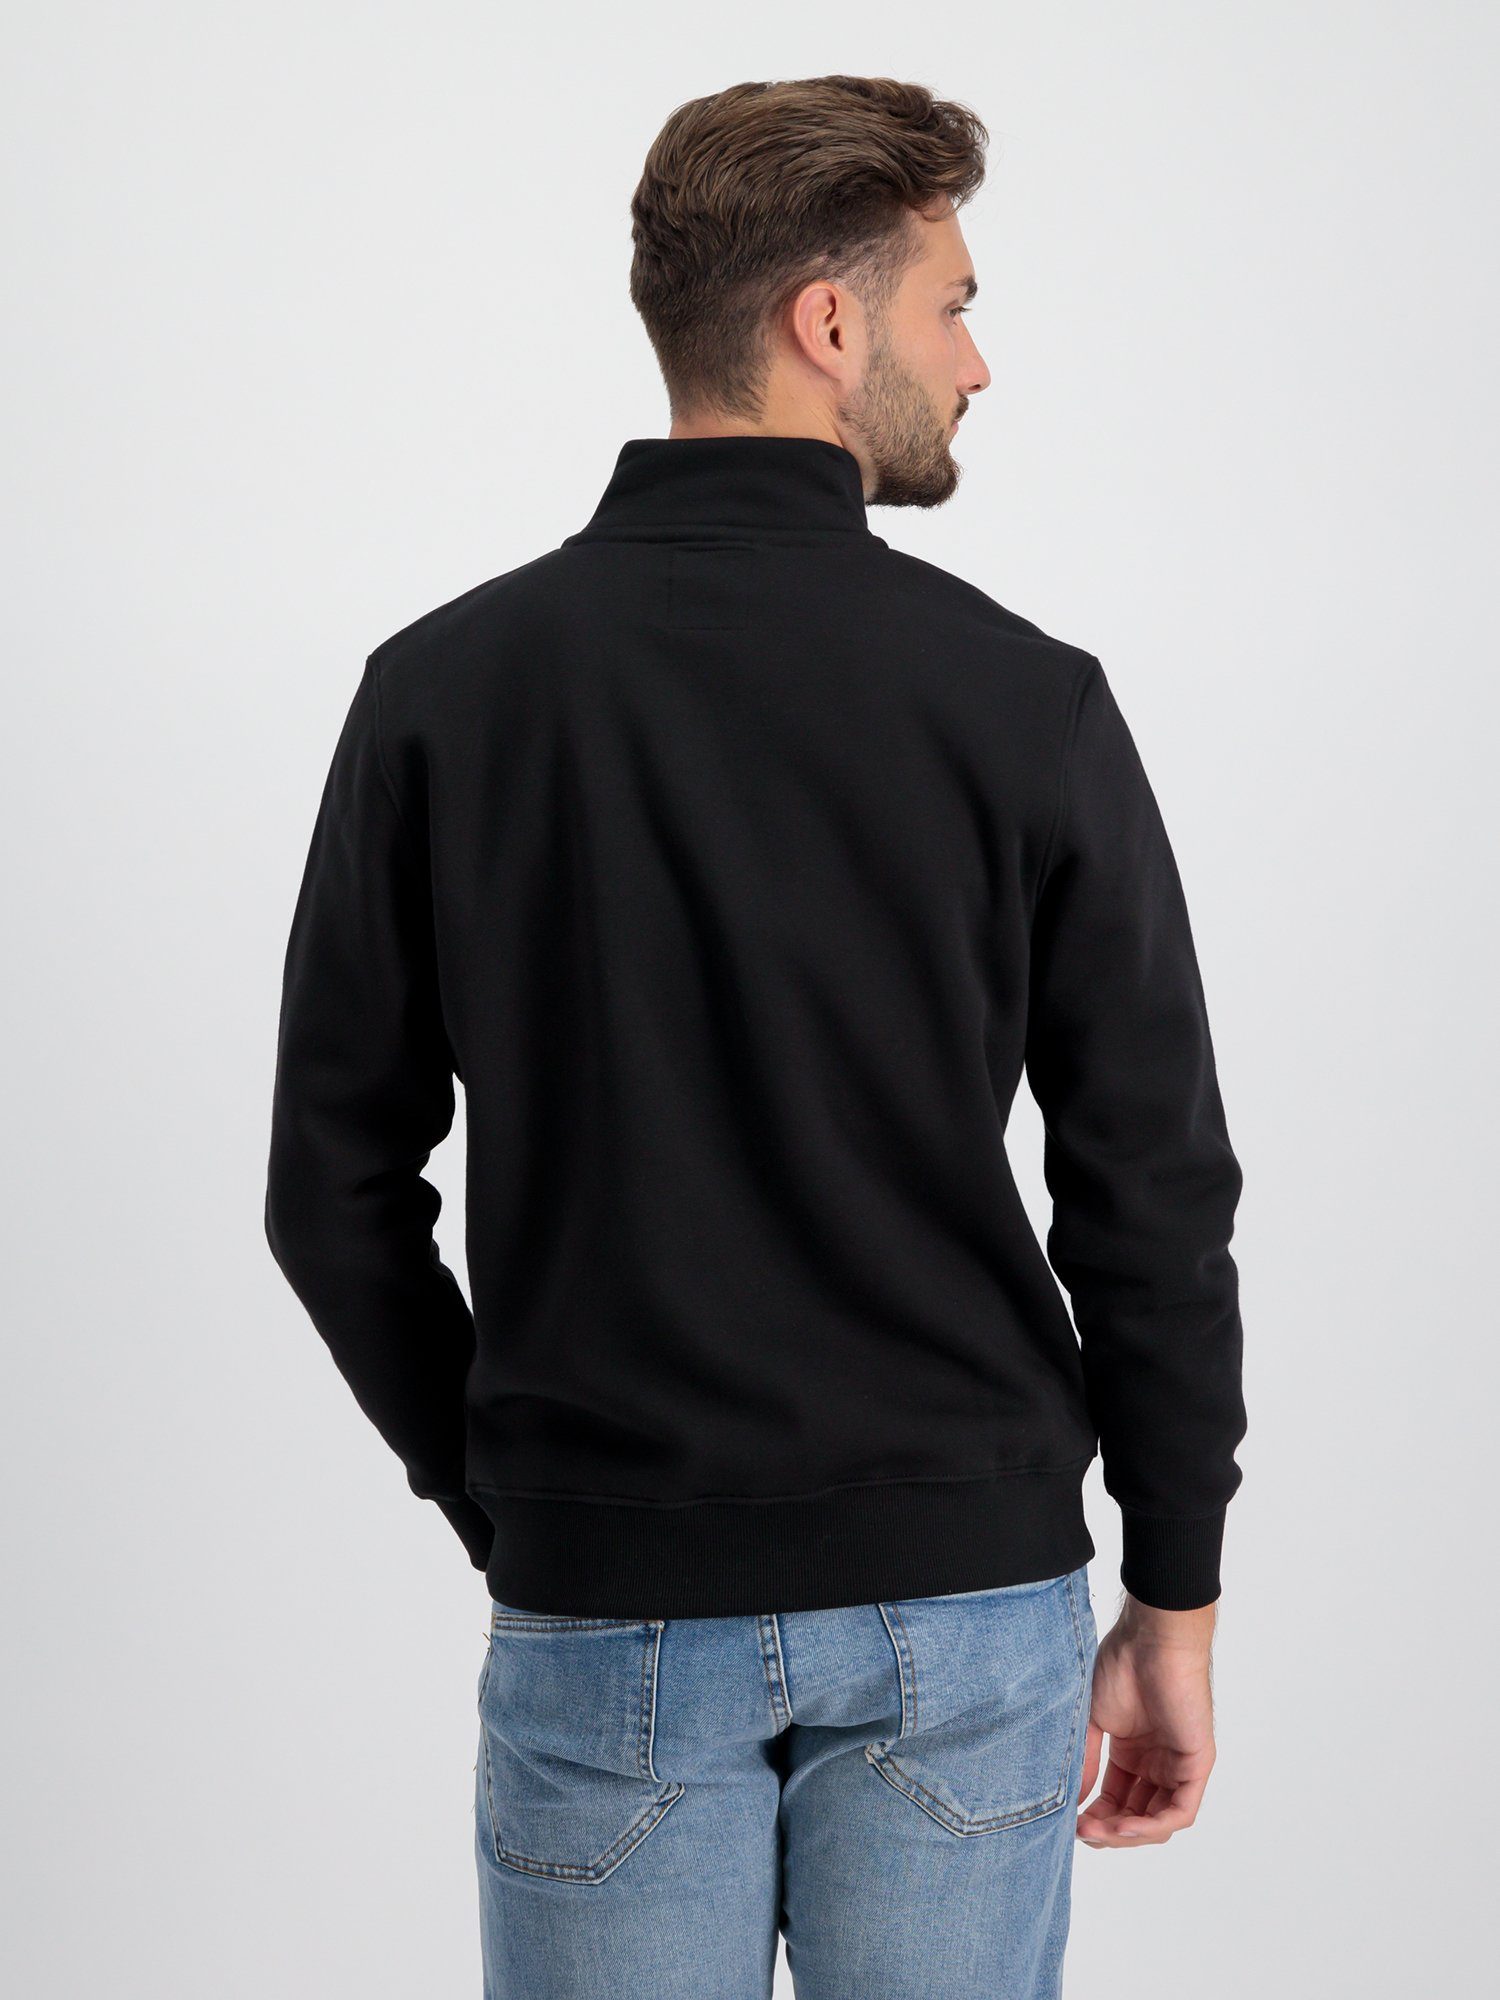 Alpha Industries Sweater - Half Men Industries Sweatshirts Alpha SL black Zip Sweater